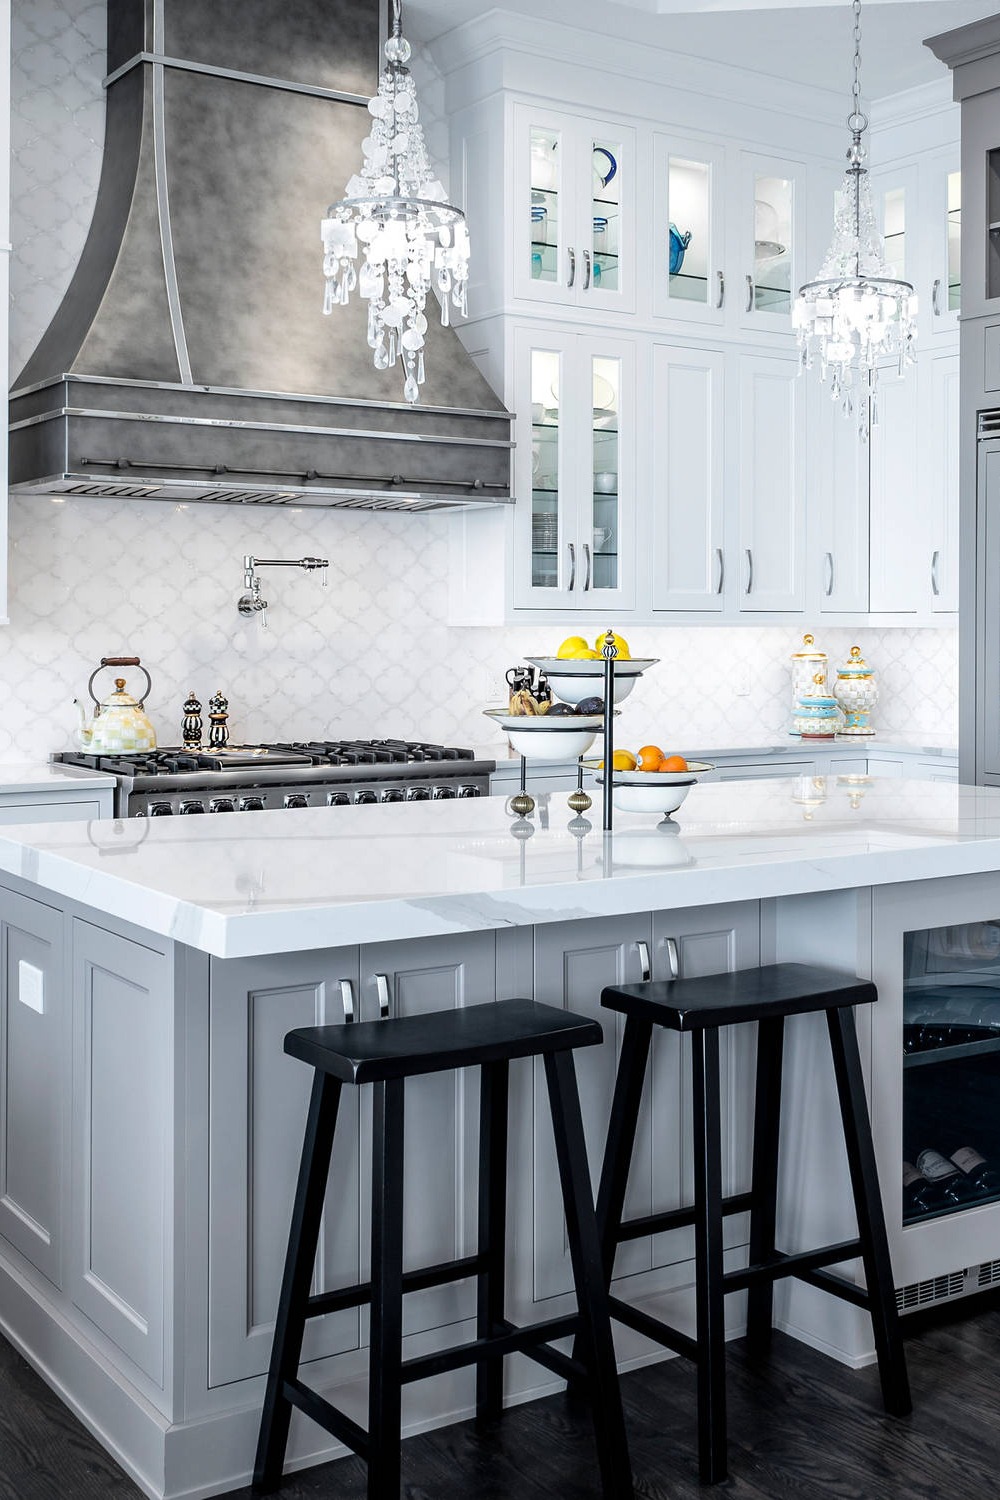 Arabesque Tile Backsplash White Quartz Countertops Gray Cabinets Dark Wood Floor